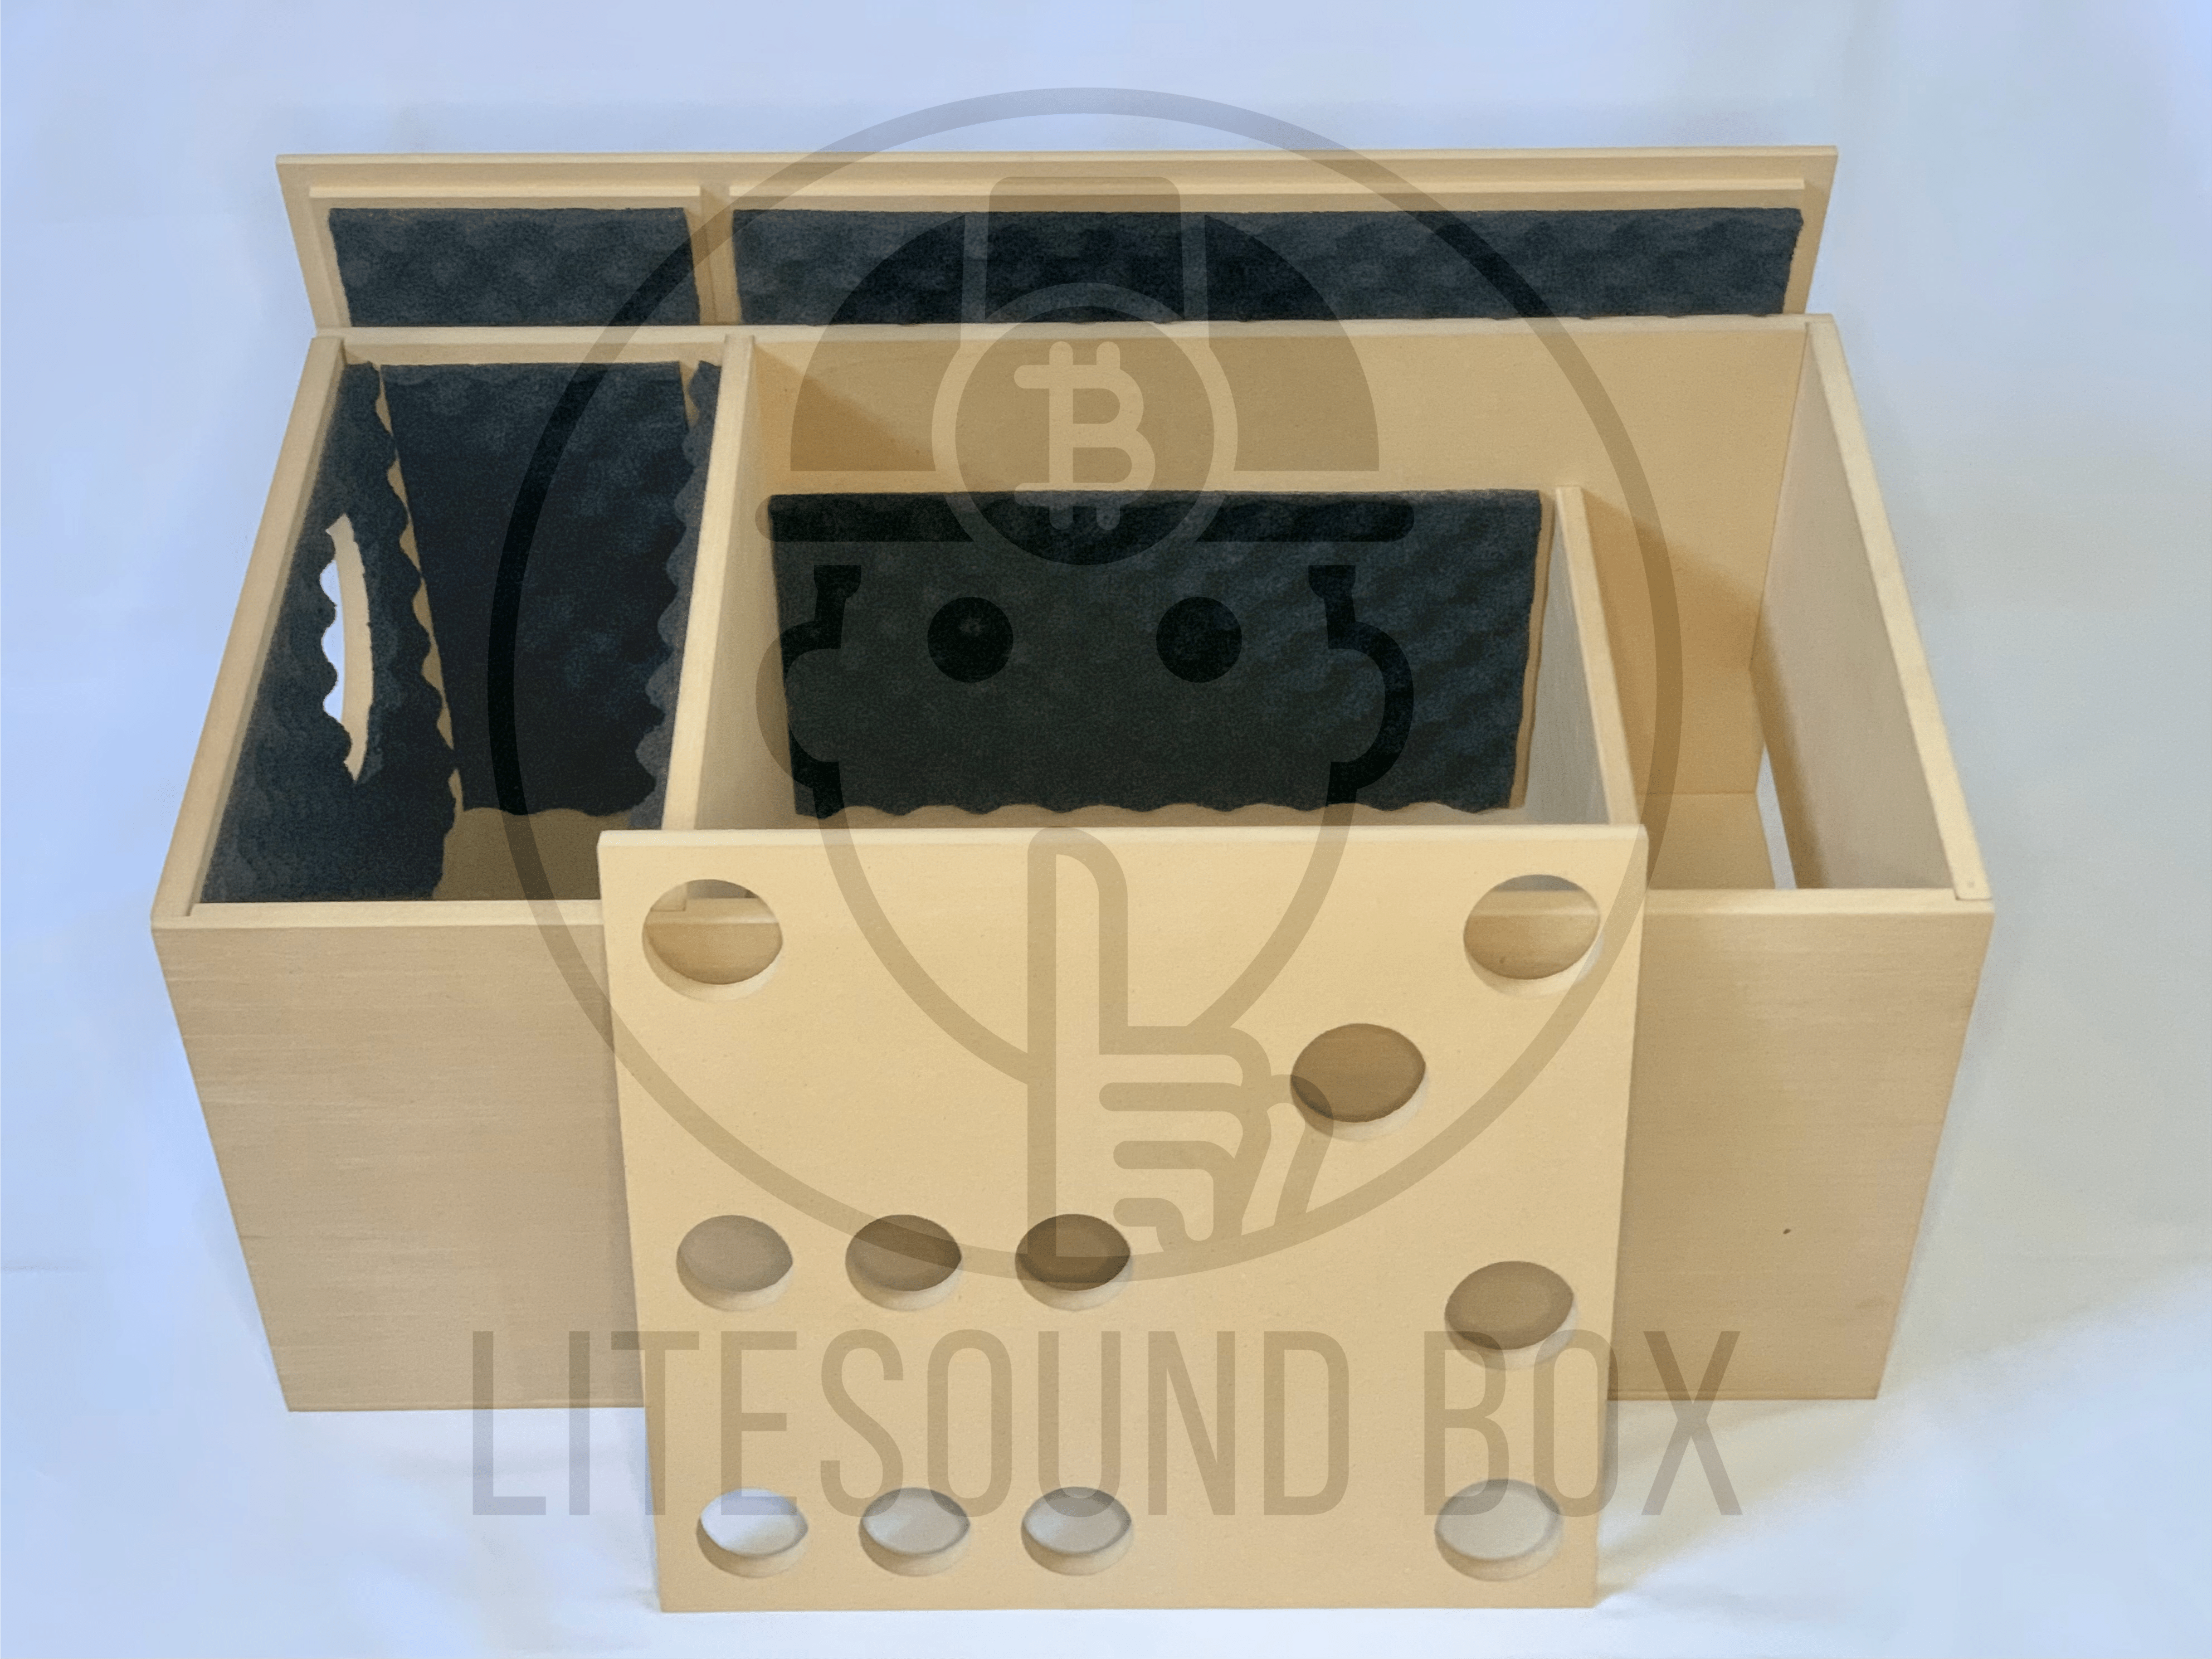 Audio-Rauschunterdrückung für asic S19 Box - Akustikbox - PC PRAGUE